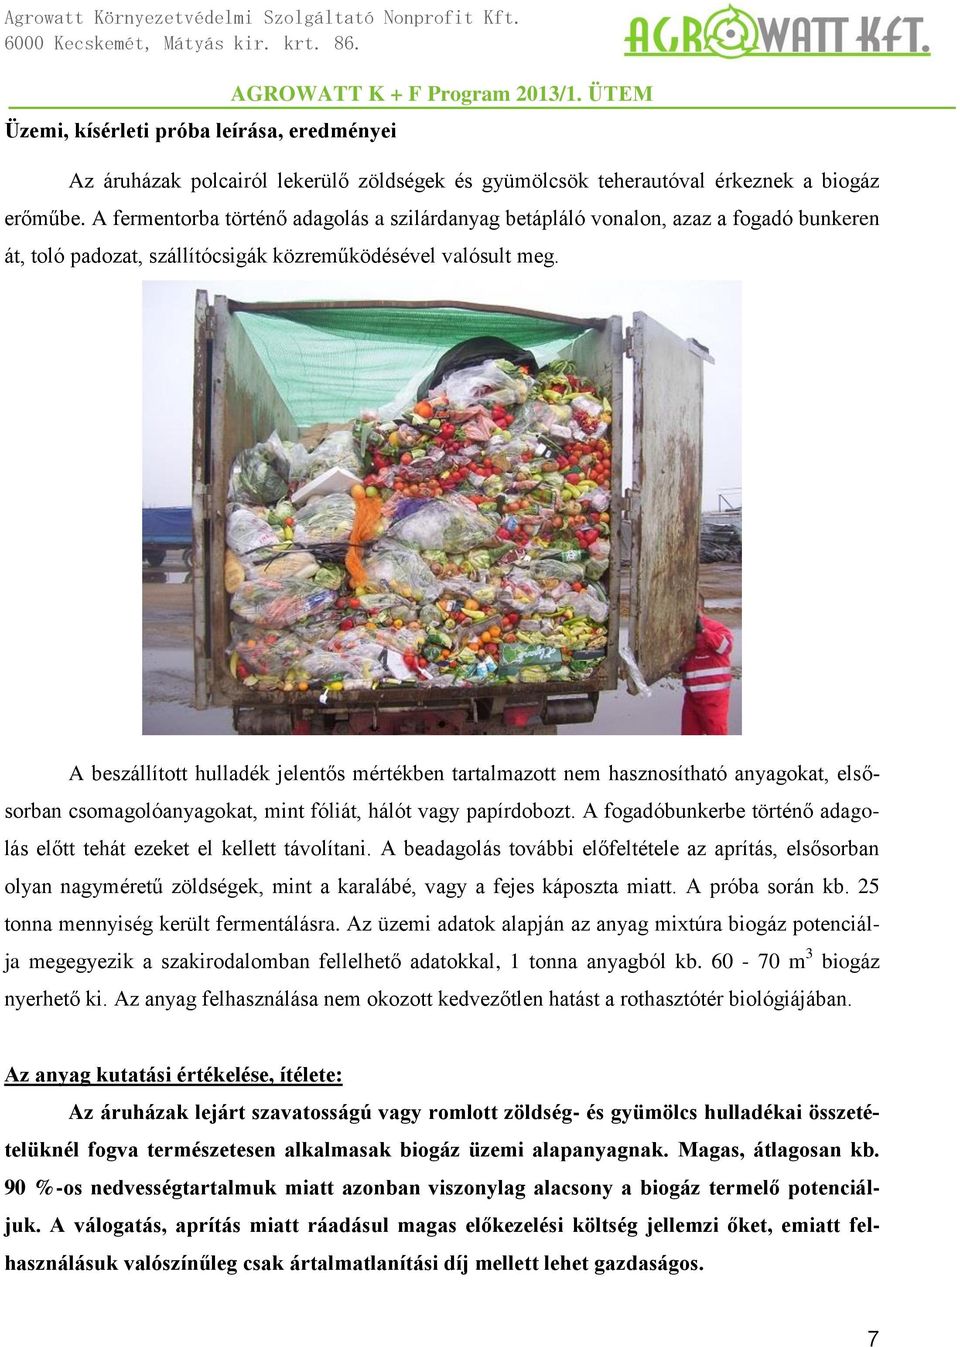 A beszállított hulladék jelentős mértékben tartalmazott nem hasznosítható anyagokat, elsősorban csomagolóanyagokat, mint fóliát, hálót vagy papírdobozt.